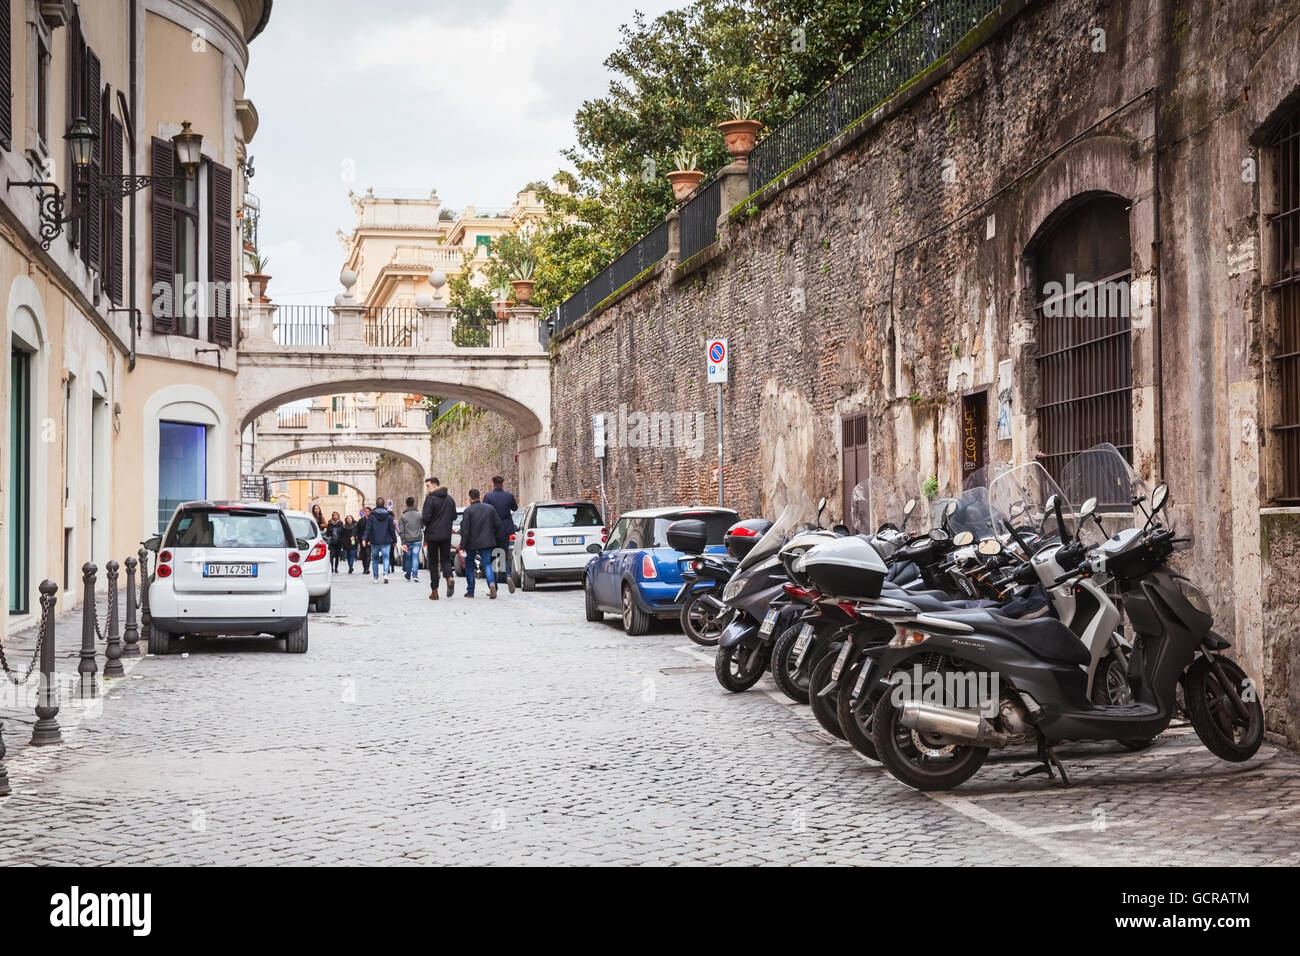 Roma, Italia - 13 Febbraio 2016: strada ordinaria nella vecchia Roma con parcheggio auto e motocicli Foto Stock